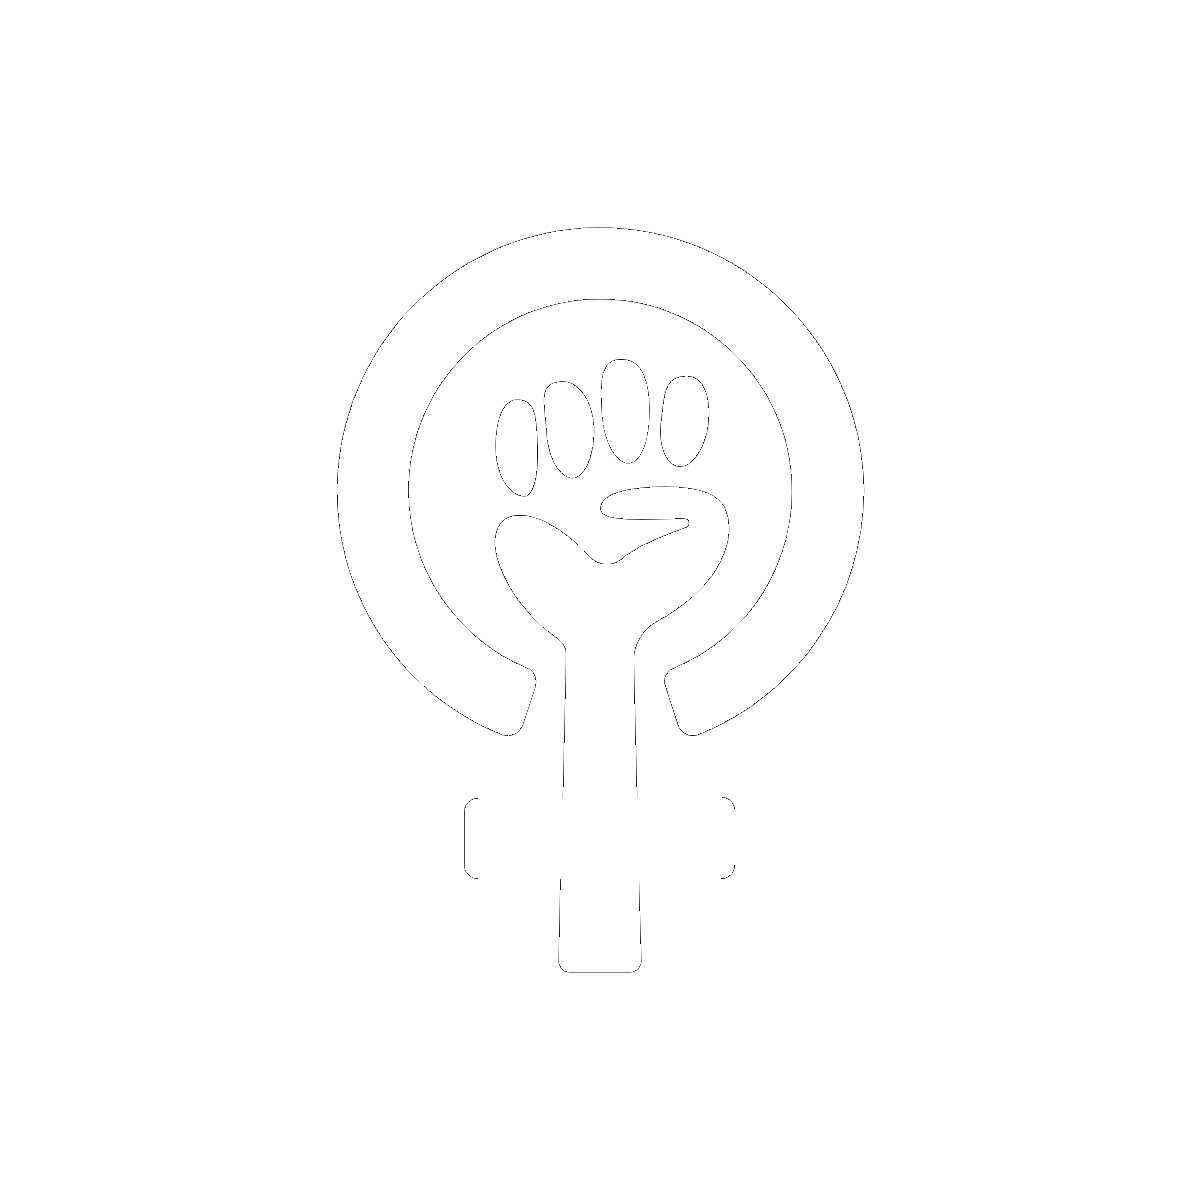 Theme Femininity, Empowerment, and Freedom